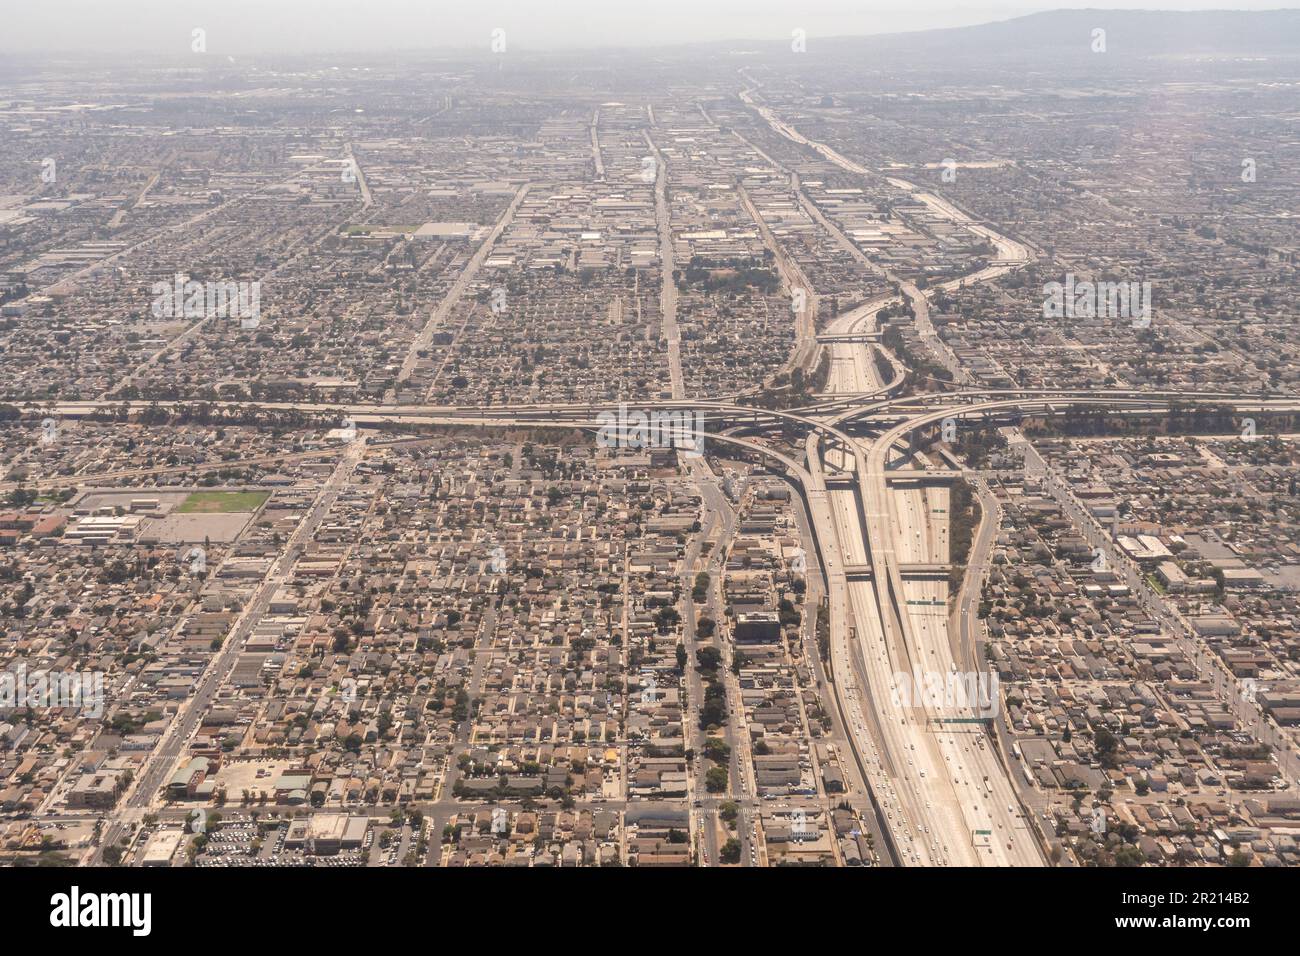 Los Angeles California - image aérienne de l'échangeur à l'intersection de l'I-105 et de l'I--110 (autoroute portuaire) et de la ligne verte du métro Banque D'Images